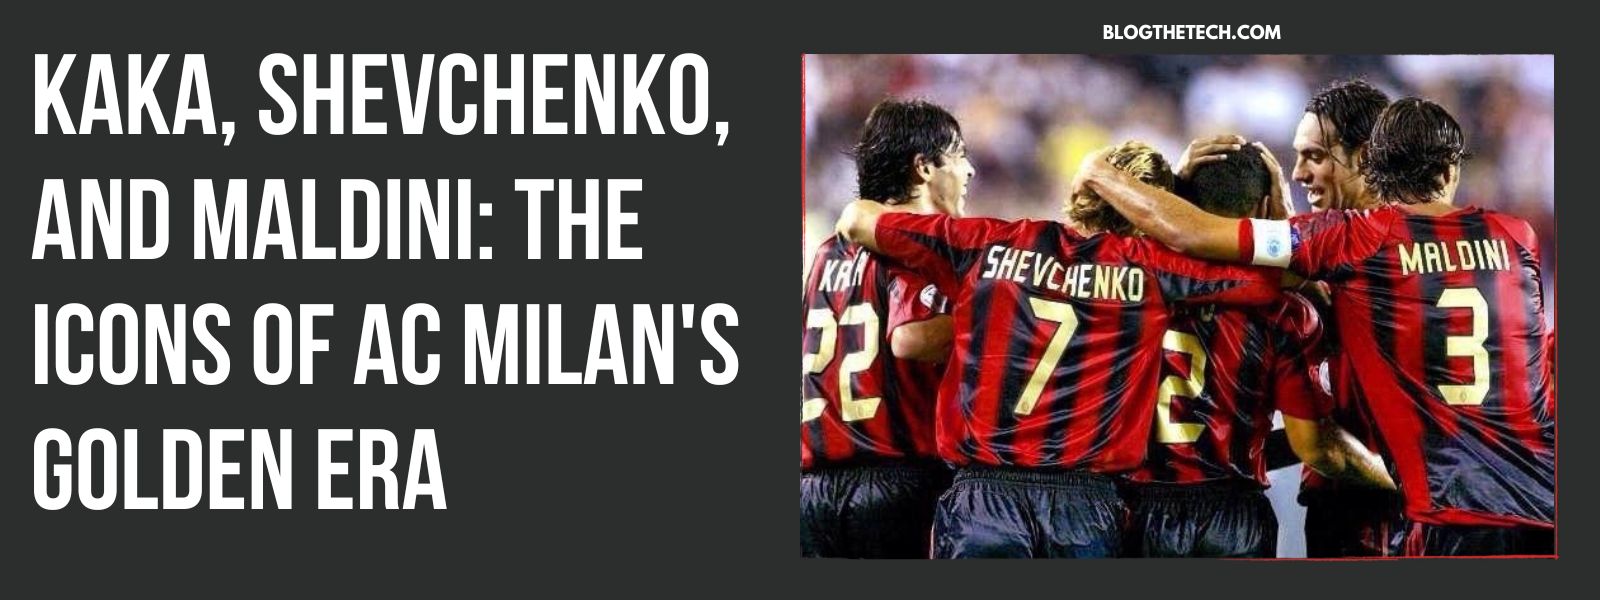 Kaka, Shevchenko, and Maldini: The Icons of AC Milan's Golden Era